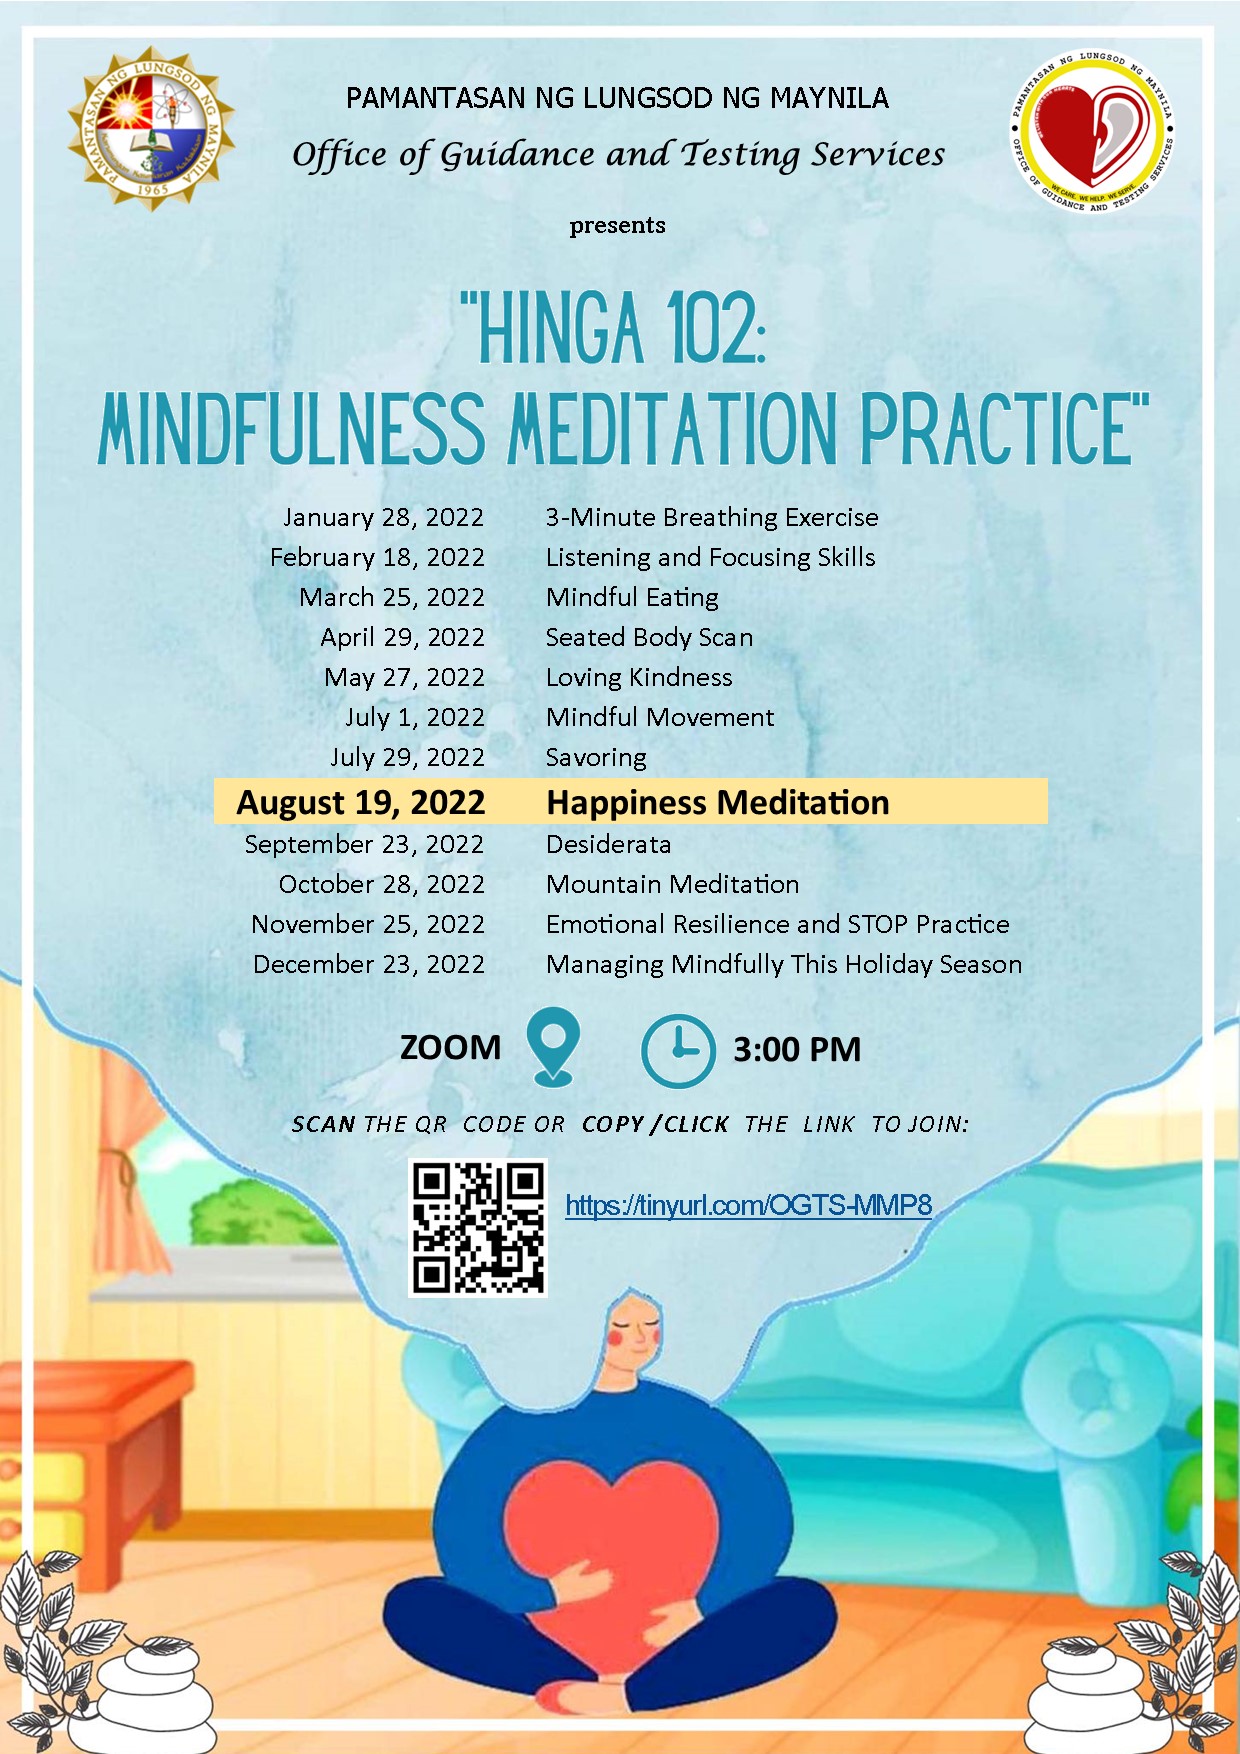 Join Hinga 102's Happiness Meditation on Aug. 19, 3 PM